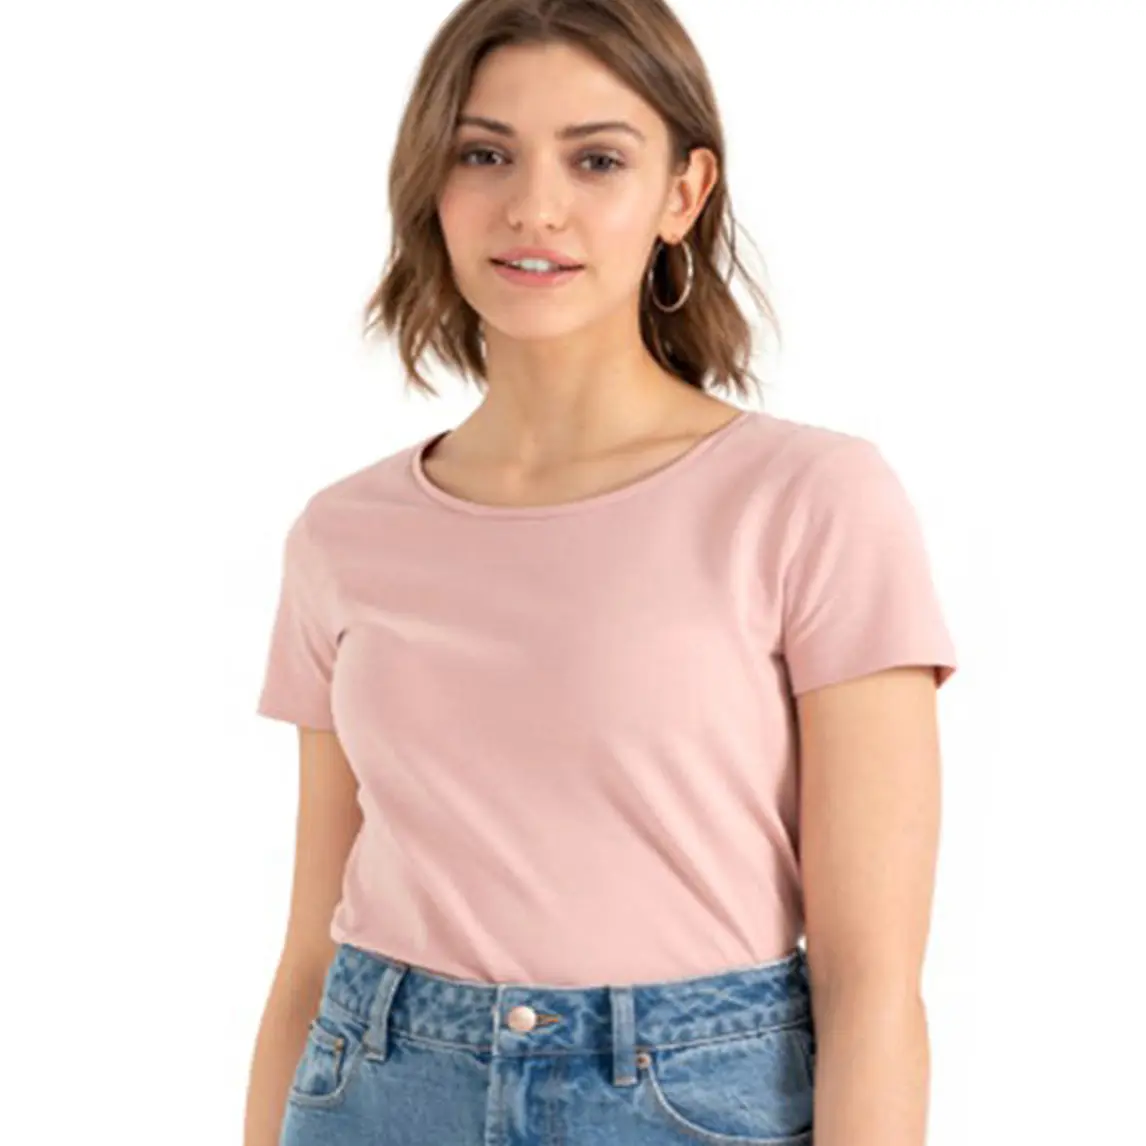 T-shirt femminili di vendita calda "EVA Single jersey" cotone 95% 5% elastan prezzo all'ingrosso